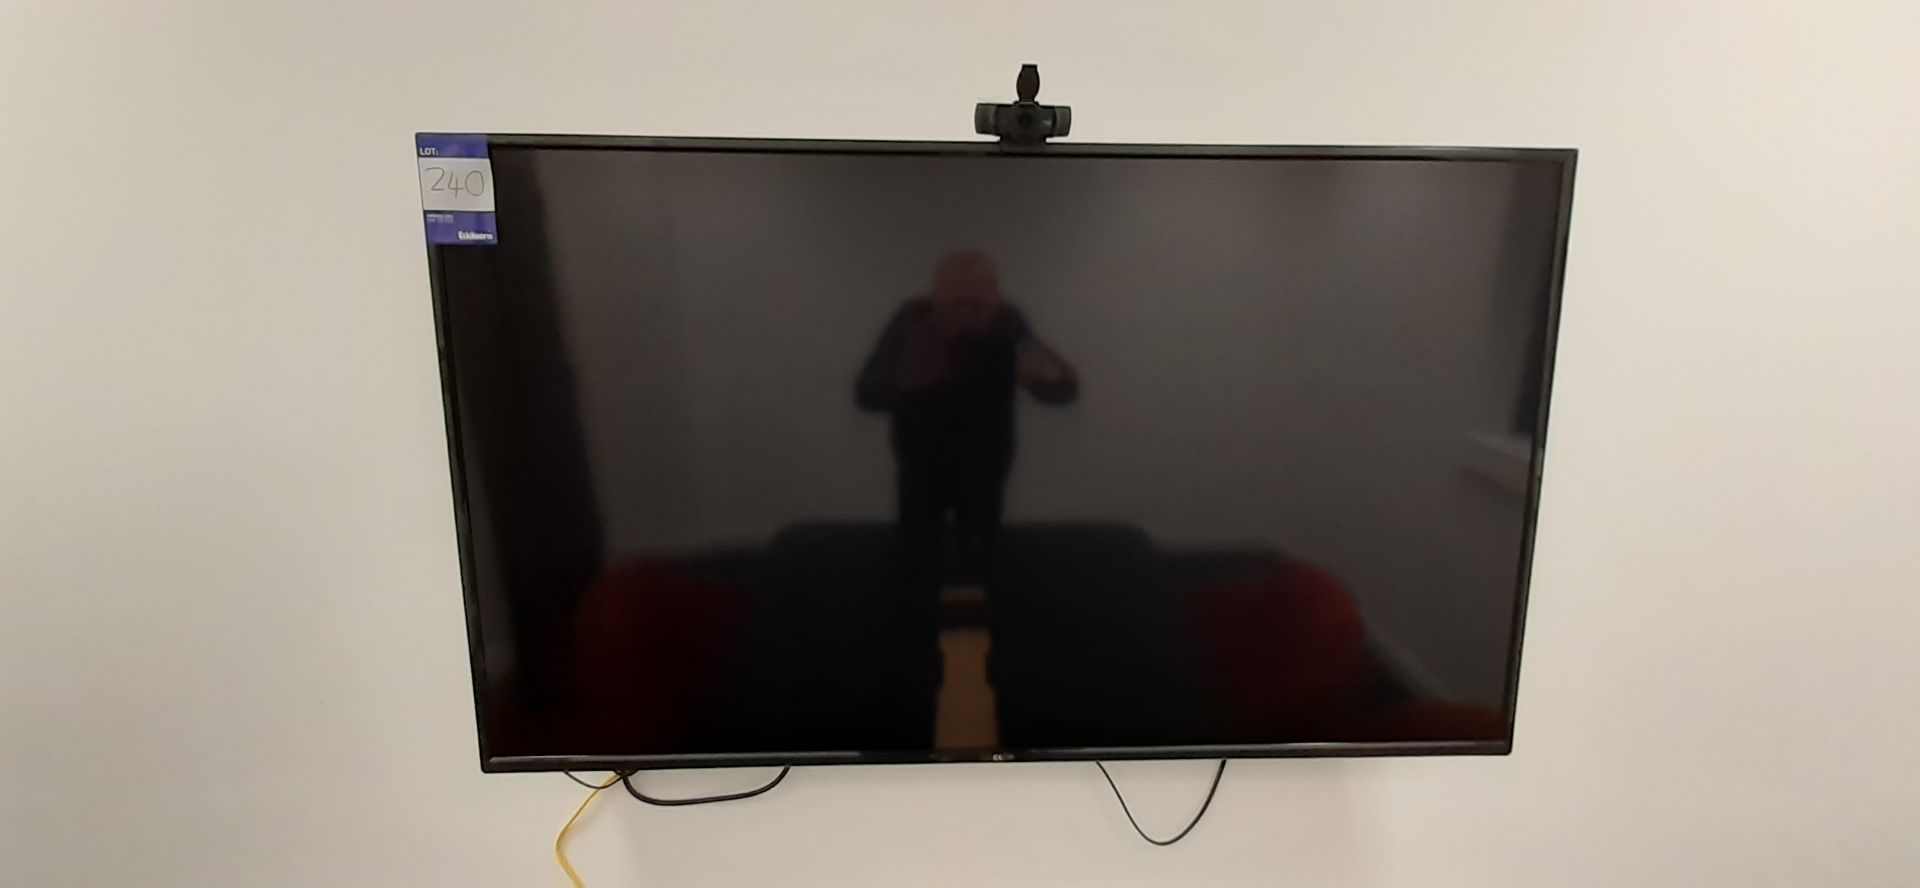 Cello 50in Smart TV with remote control